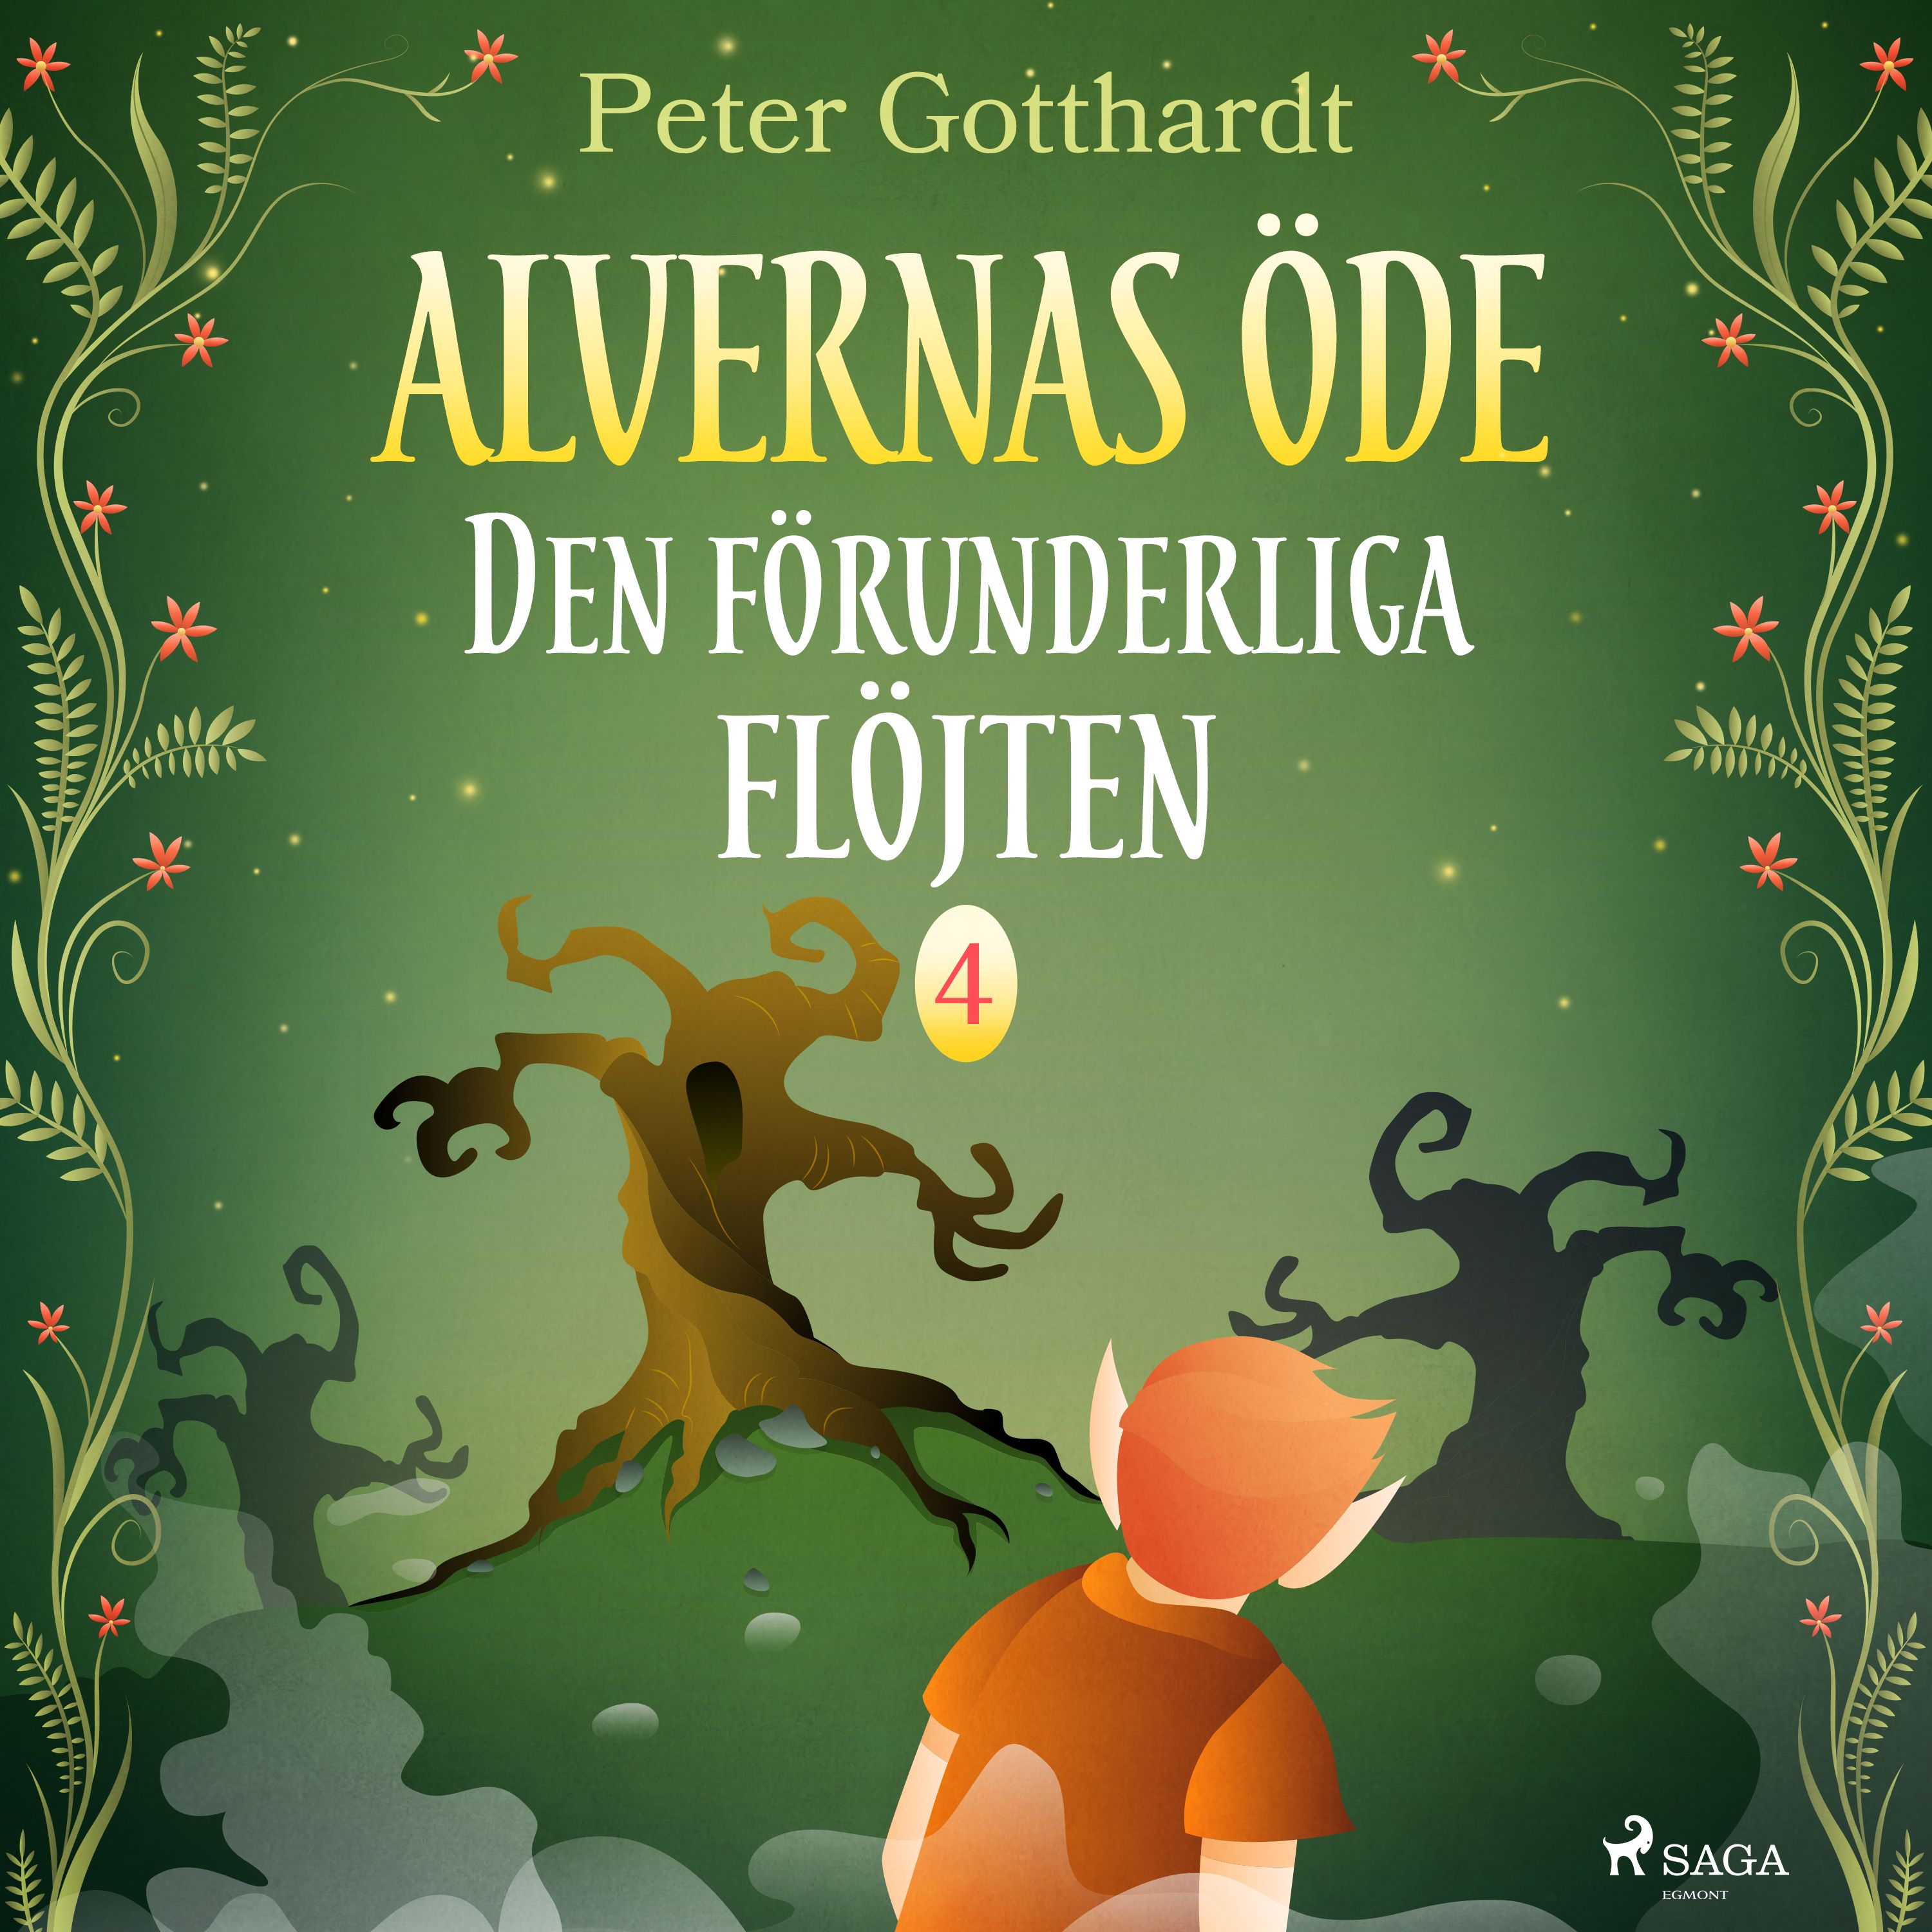 Alvernas öde 4: Den förunderliga flöjten, audiobook by Peter Gotthardt